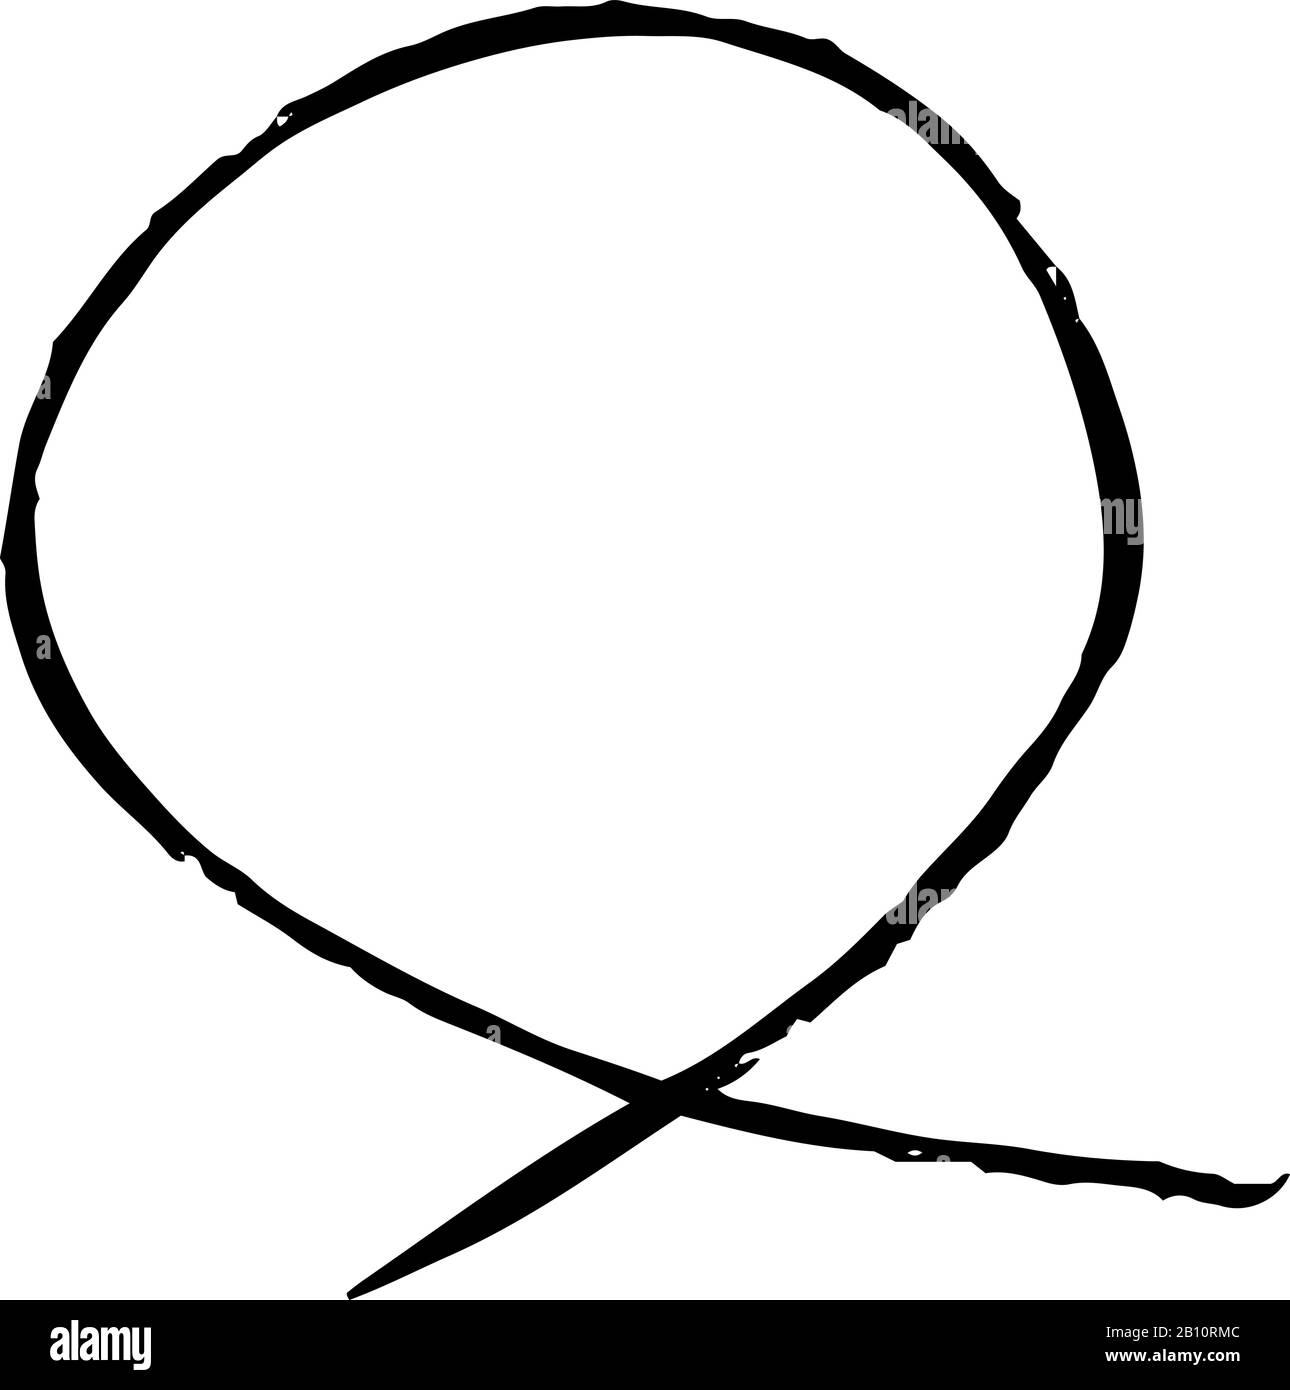 Questa è un'illustrazione Delle Variazioni dei cerchi sottili per la valutazione scritta a mano Illustrazione Vettoriale